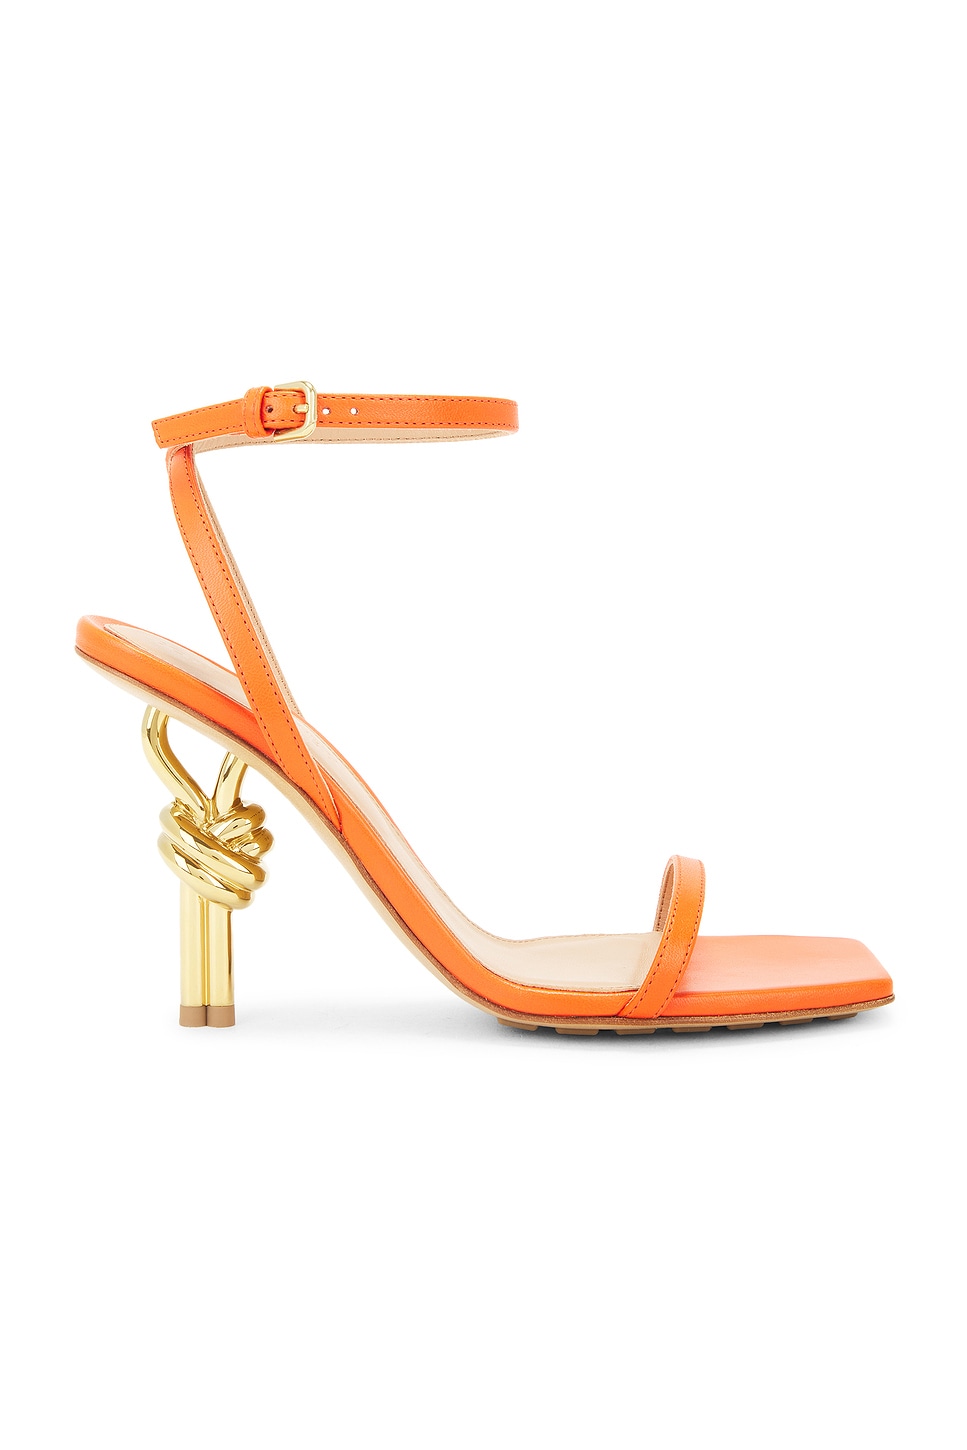 Image 1 of Bottega Veneta Knot Sandal in New Orange